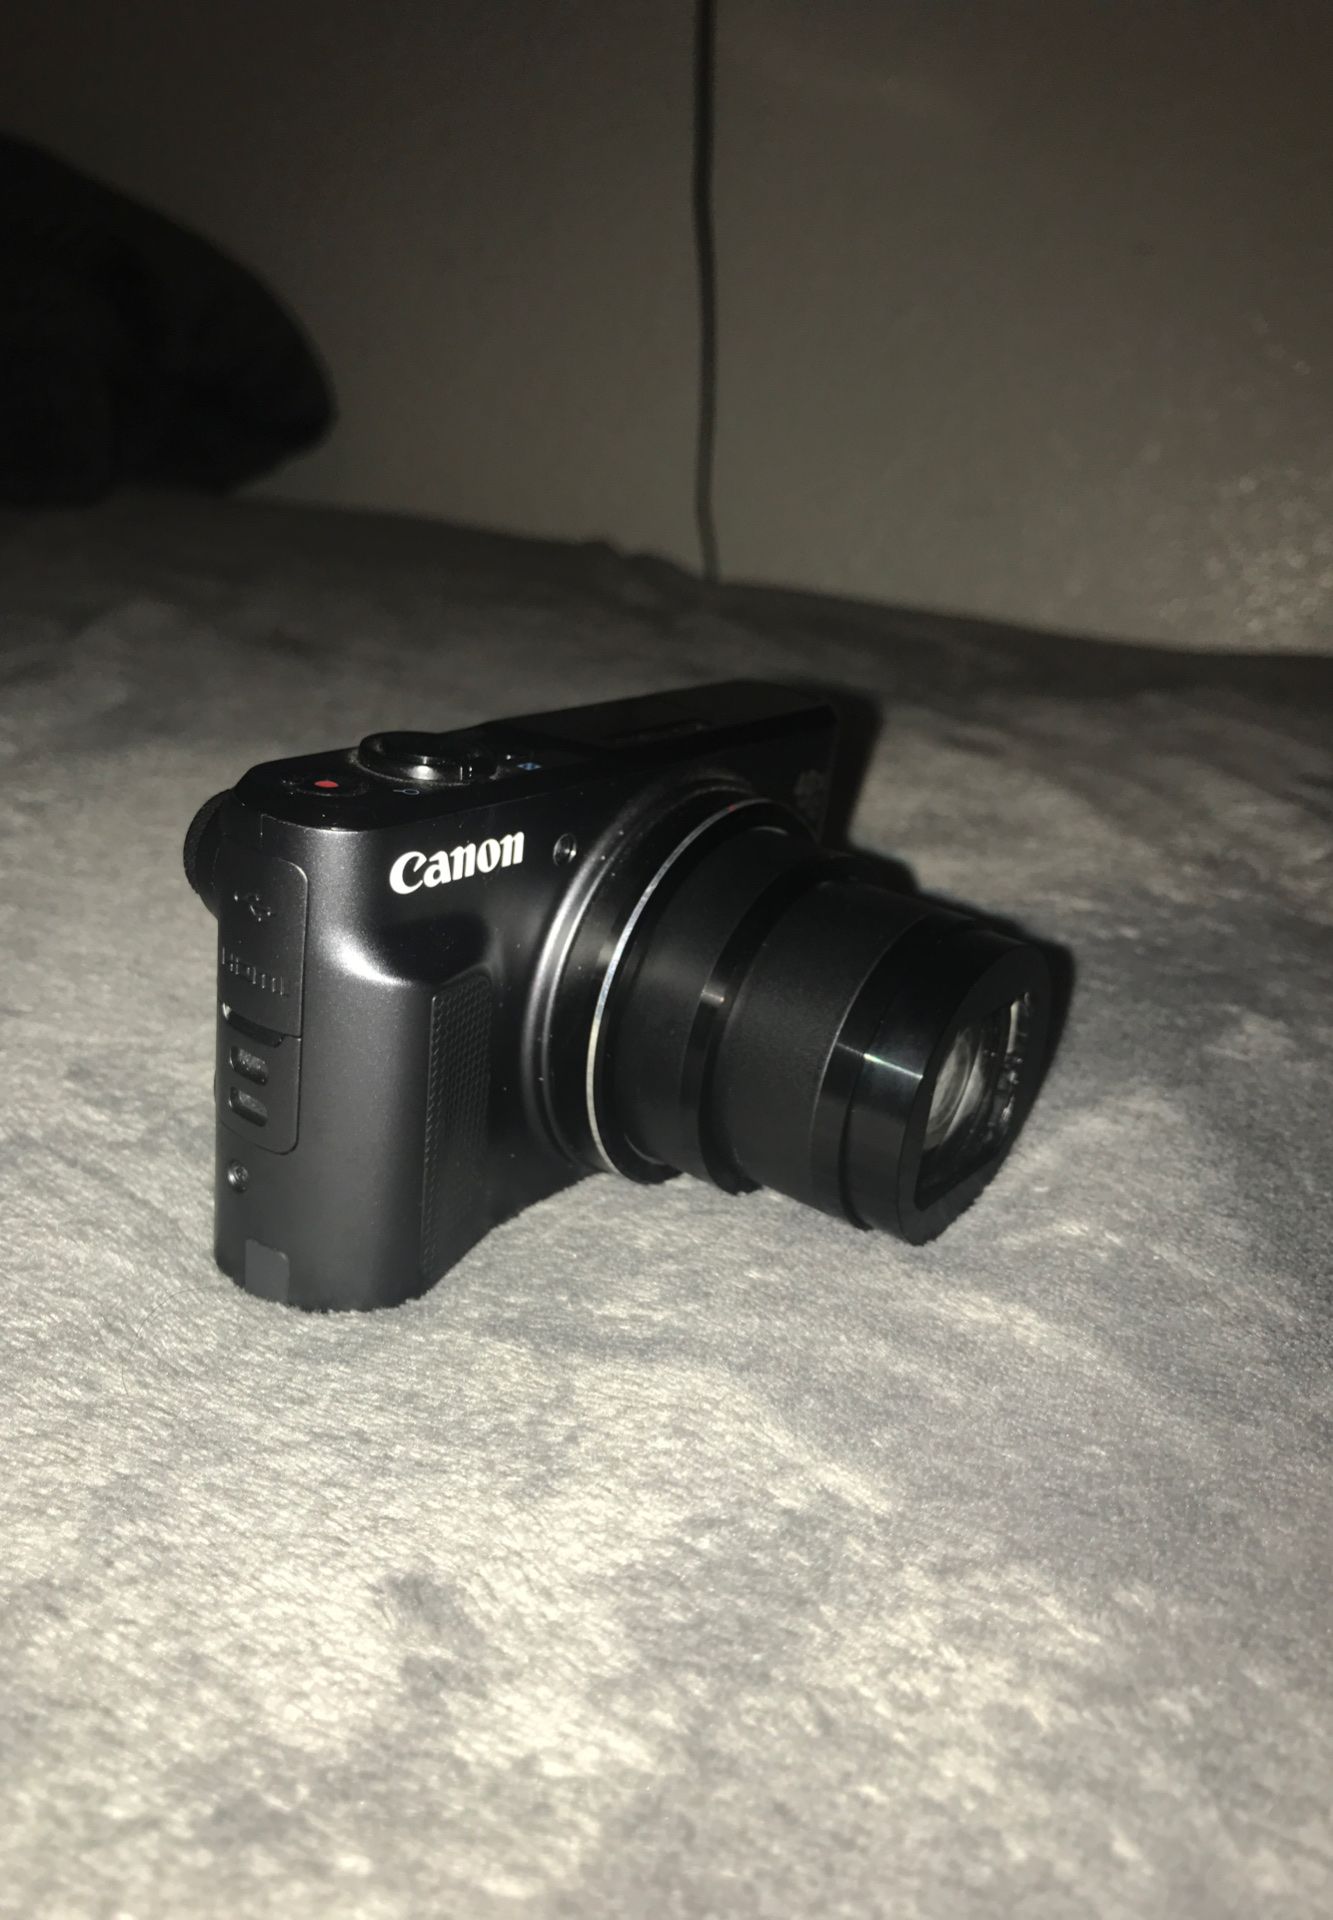 Cannon SX720 HS Camera